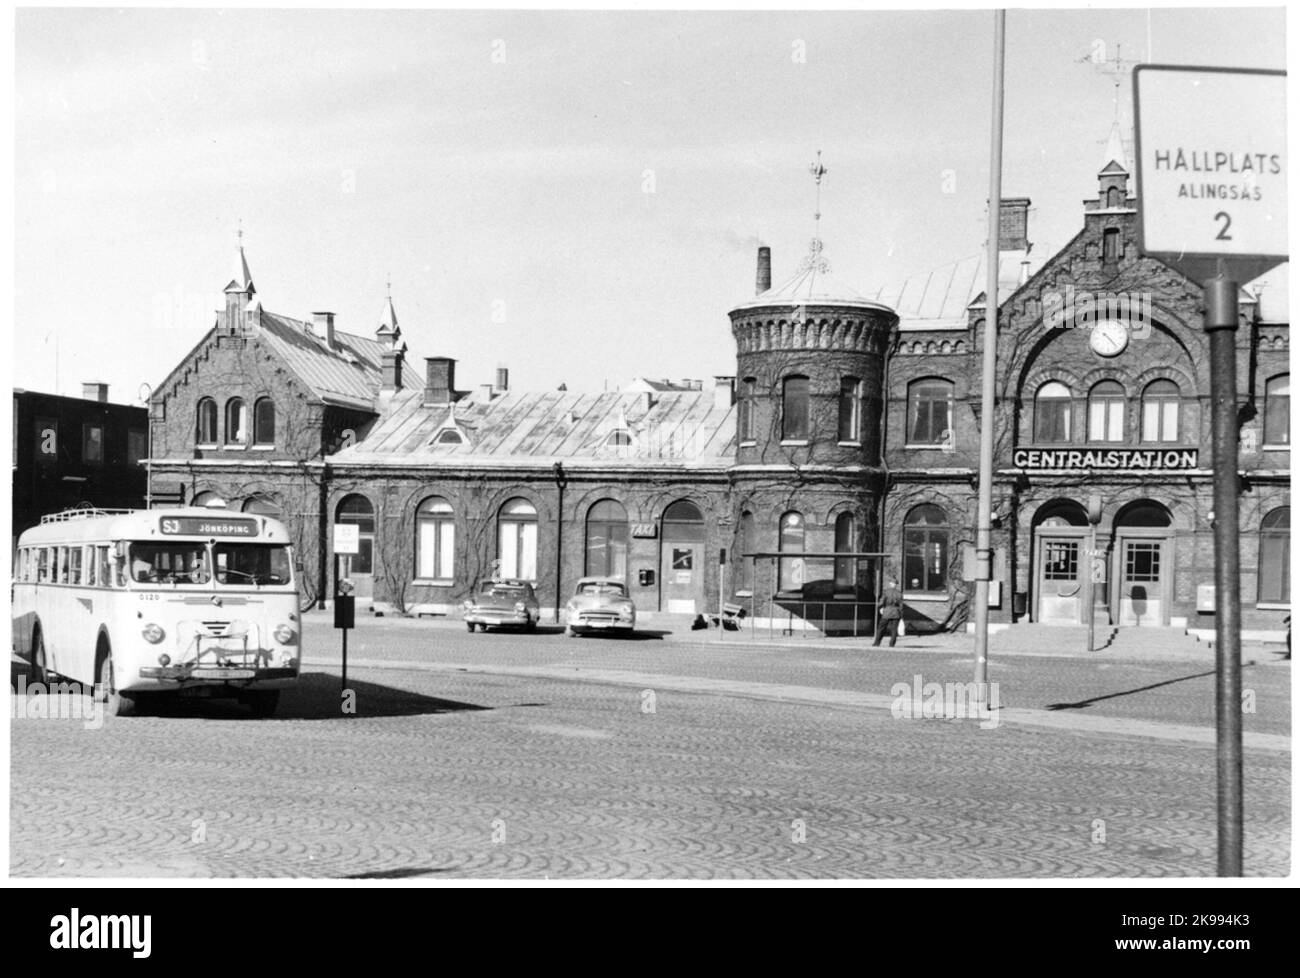 Gare de Borås Mars 1960. Fatussen Gothenburg - Borås. Jönköping - Stockholm sur le plan de la gare. A été inséré dans le trafic sur 5 juillet 1953. Banque D'Images